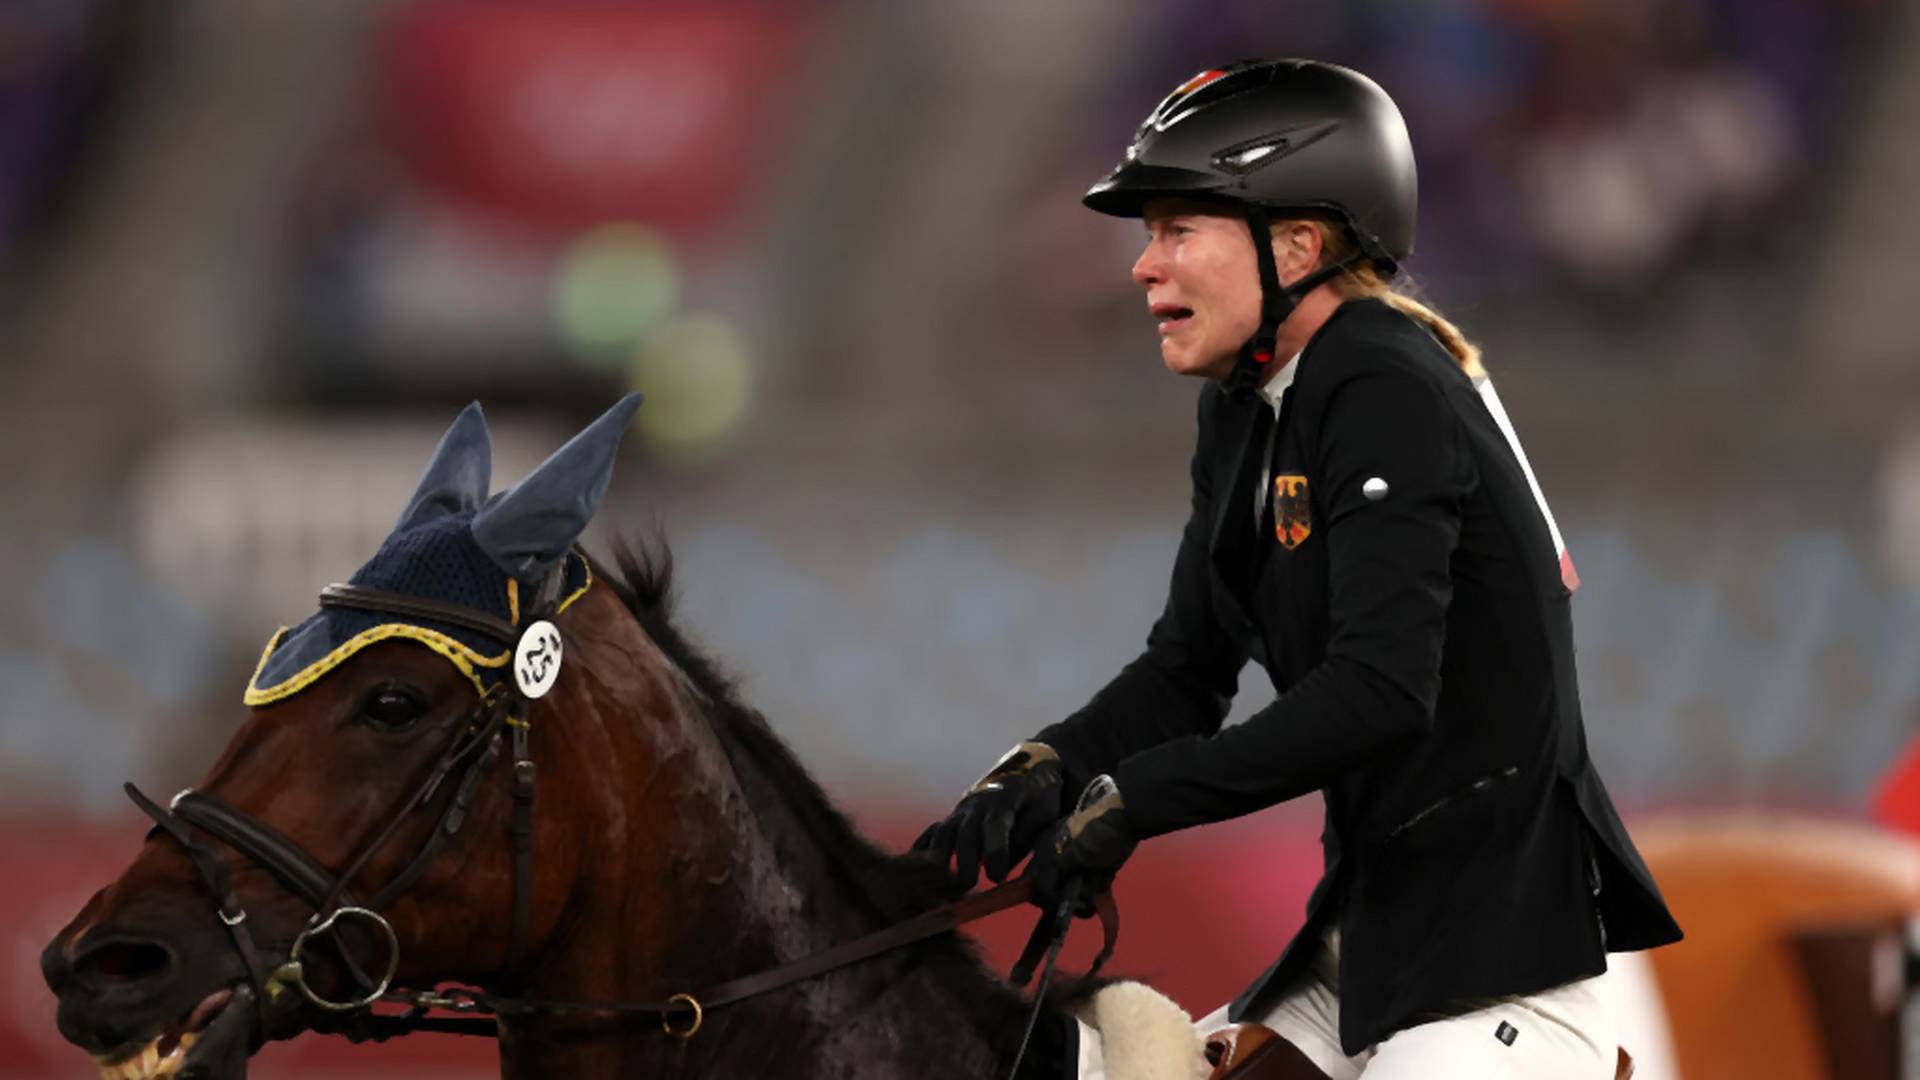 Skandal na igrzyskach w Tokio. Niemiecka trenerka uderzyła konia, który nie chciał skakać